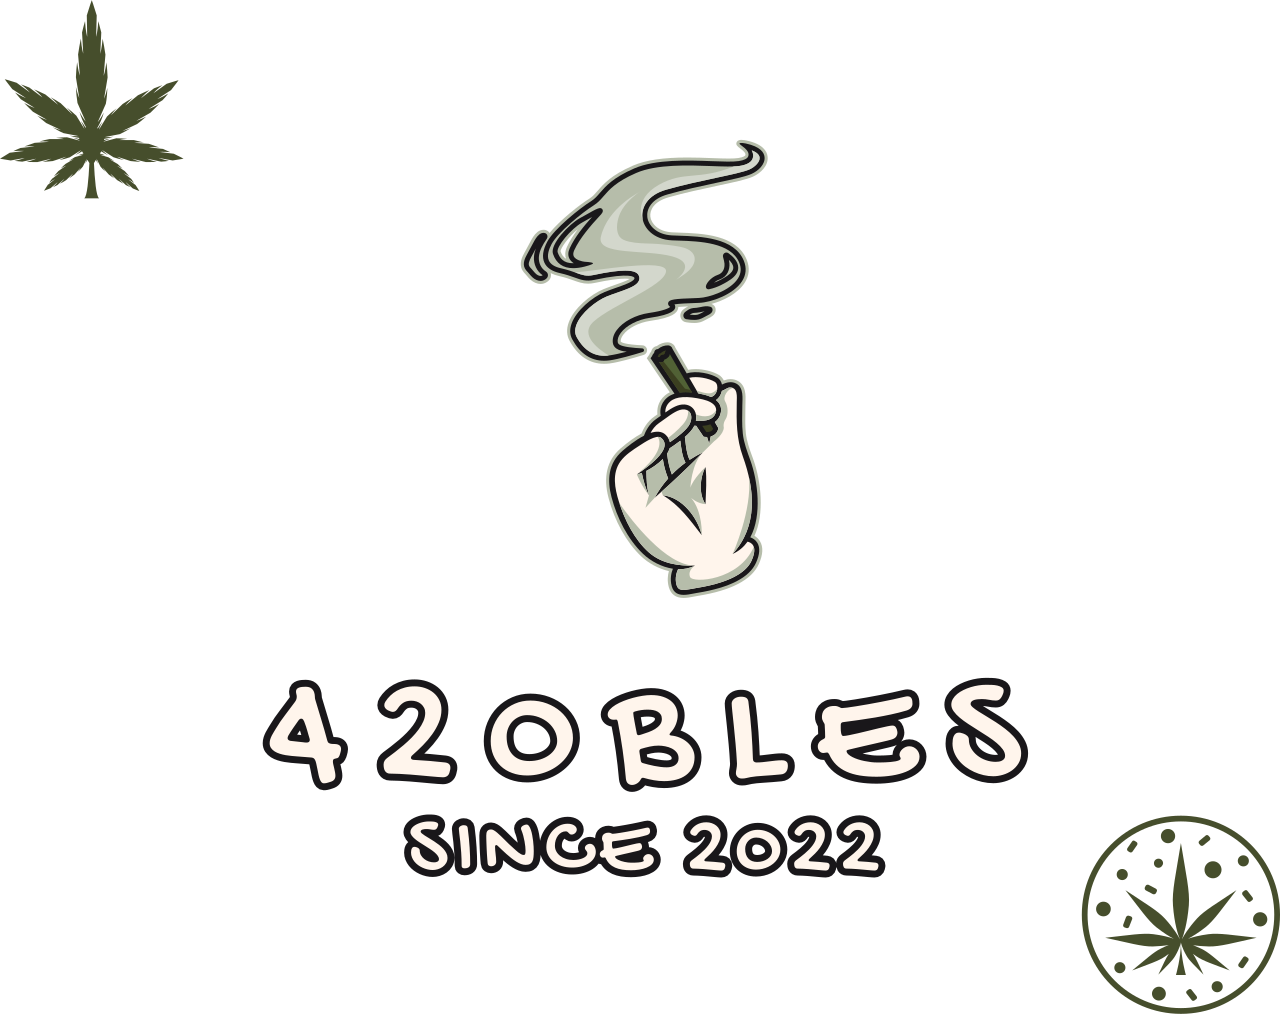 420bles's web page